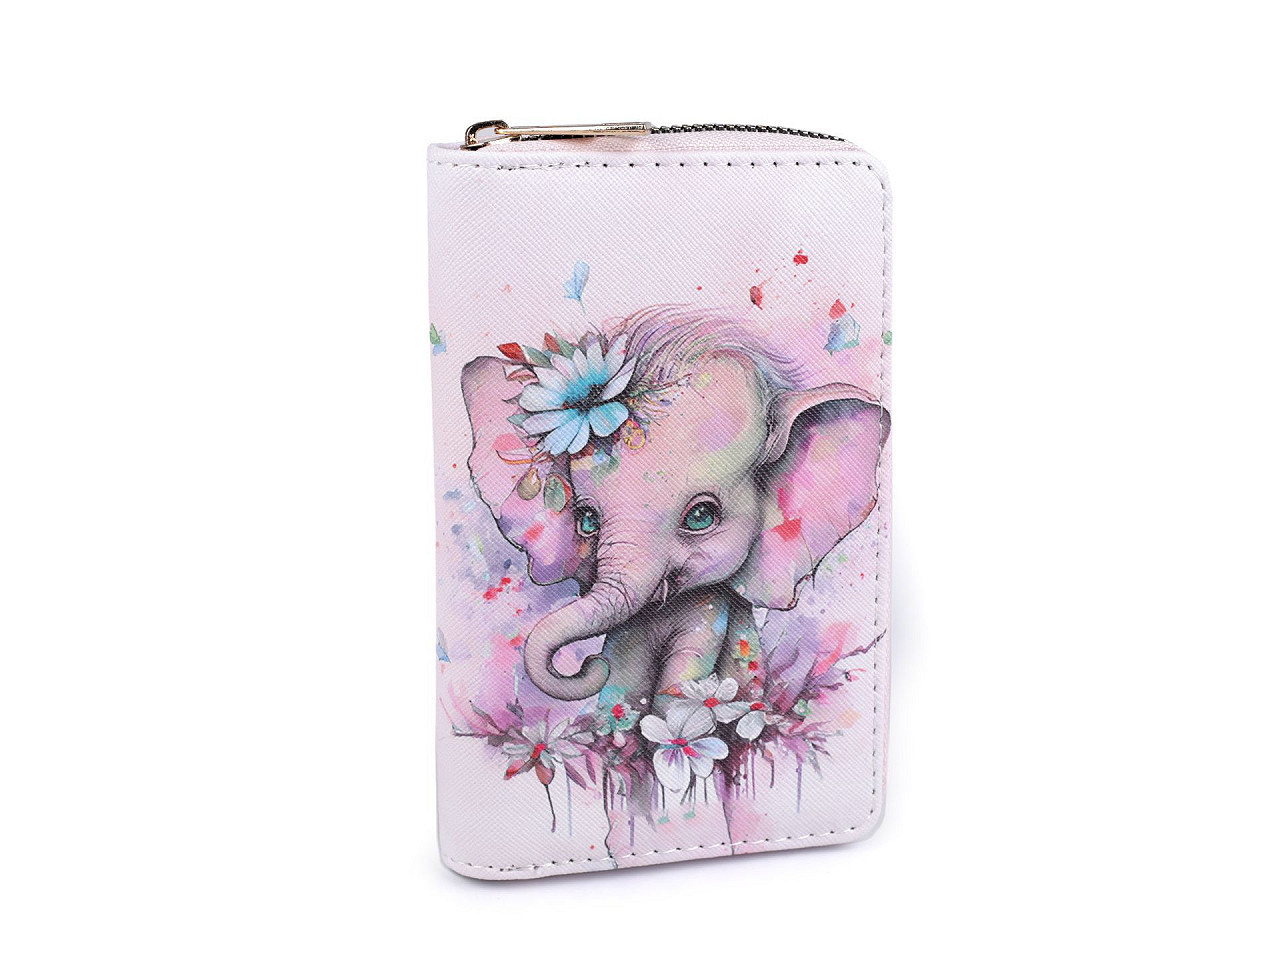 Dámská / dívčí peněženka slon 10x15,5 cm, barva 2 růžová sv.